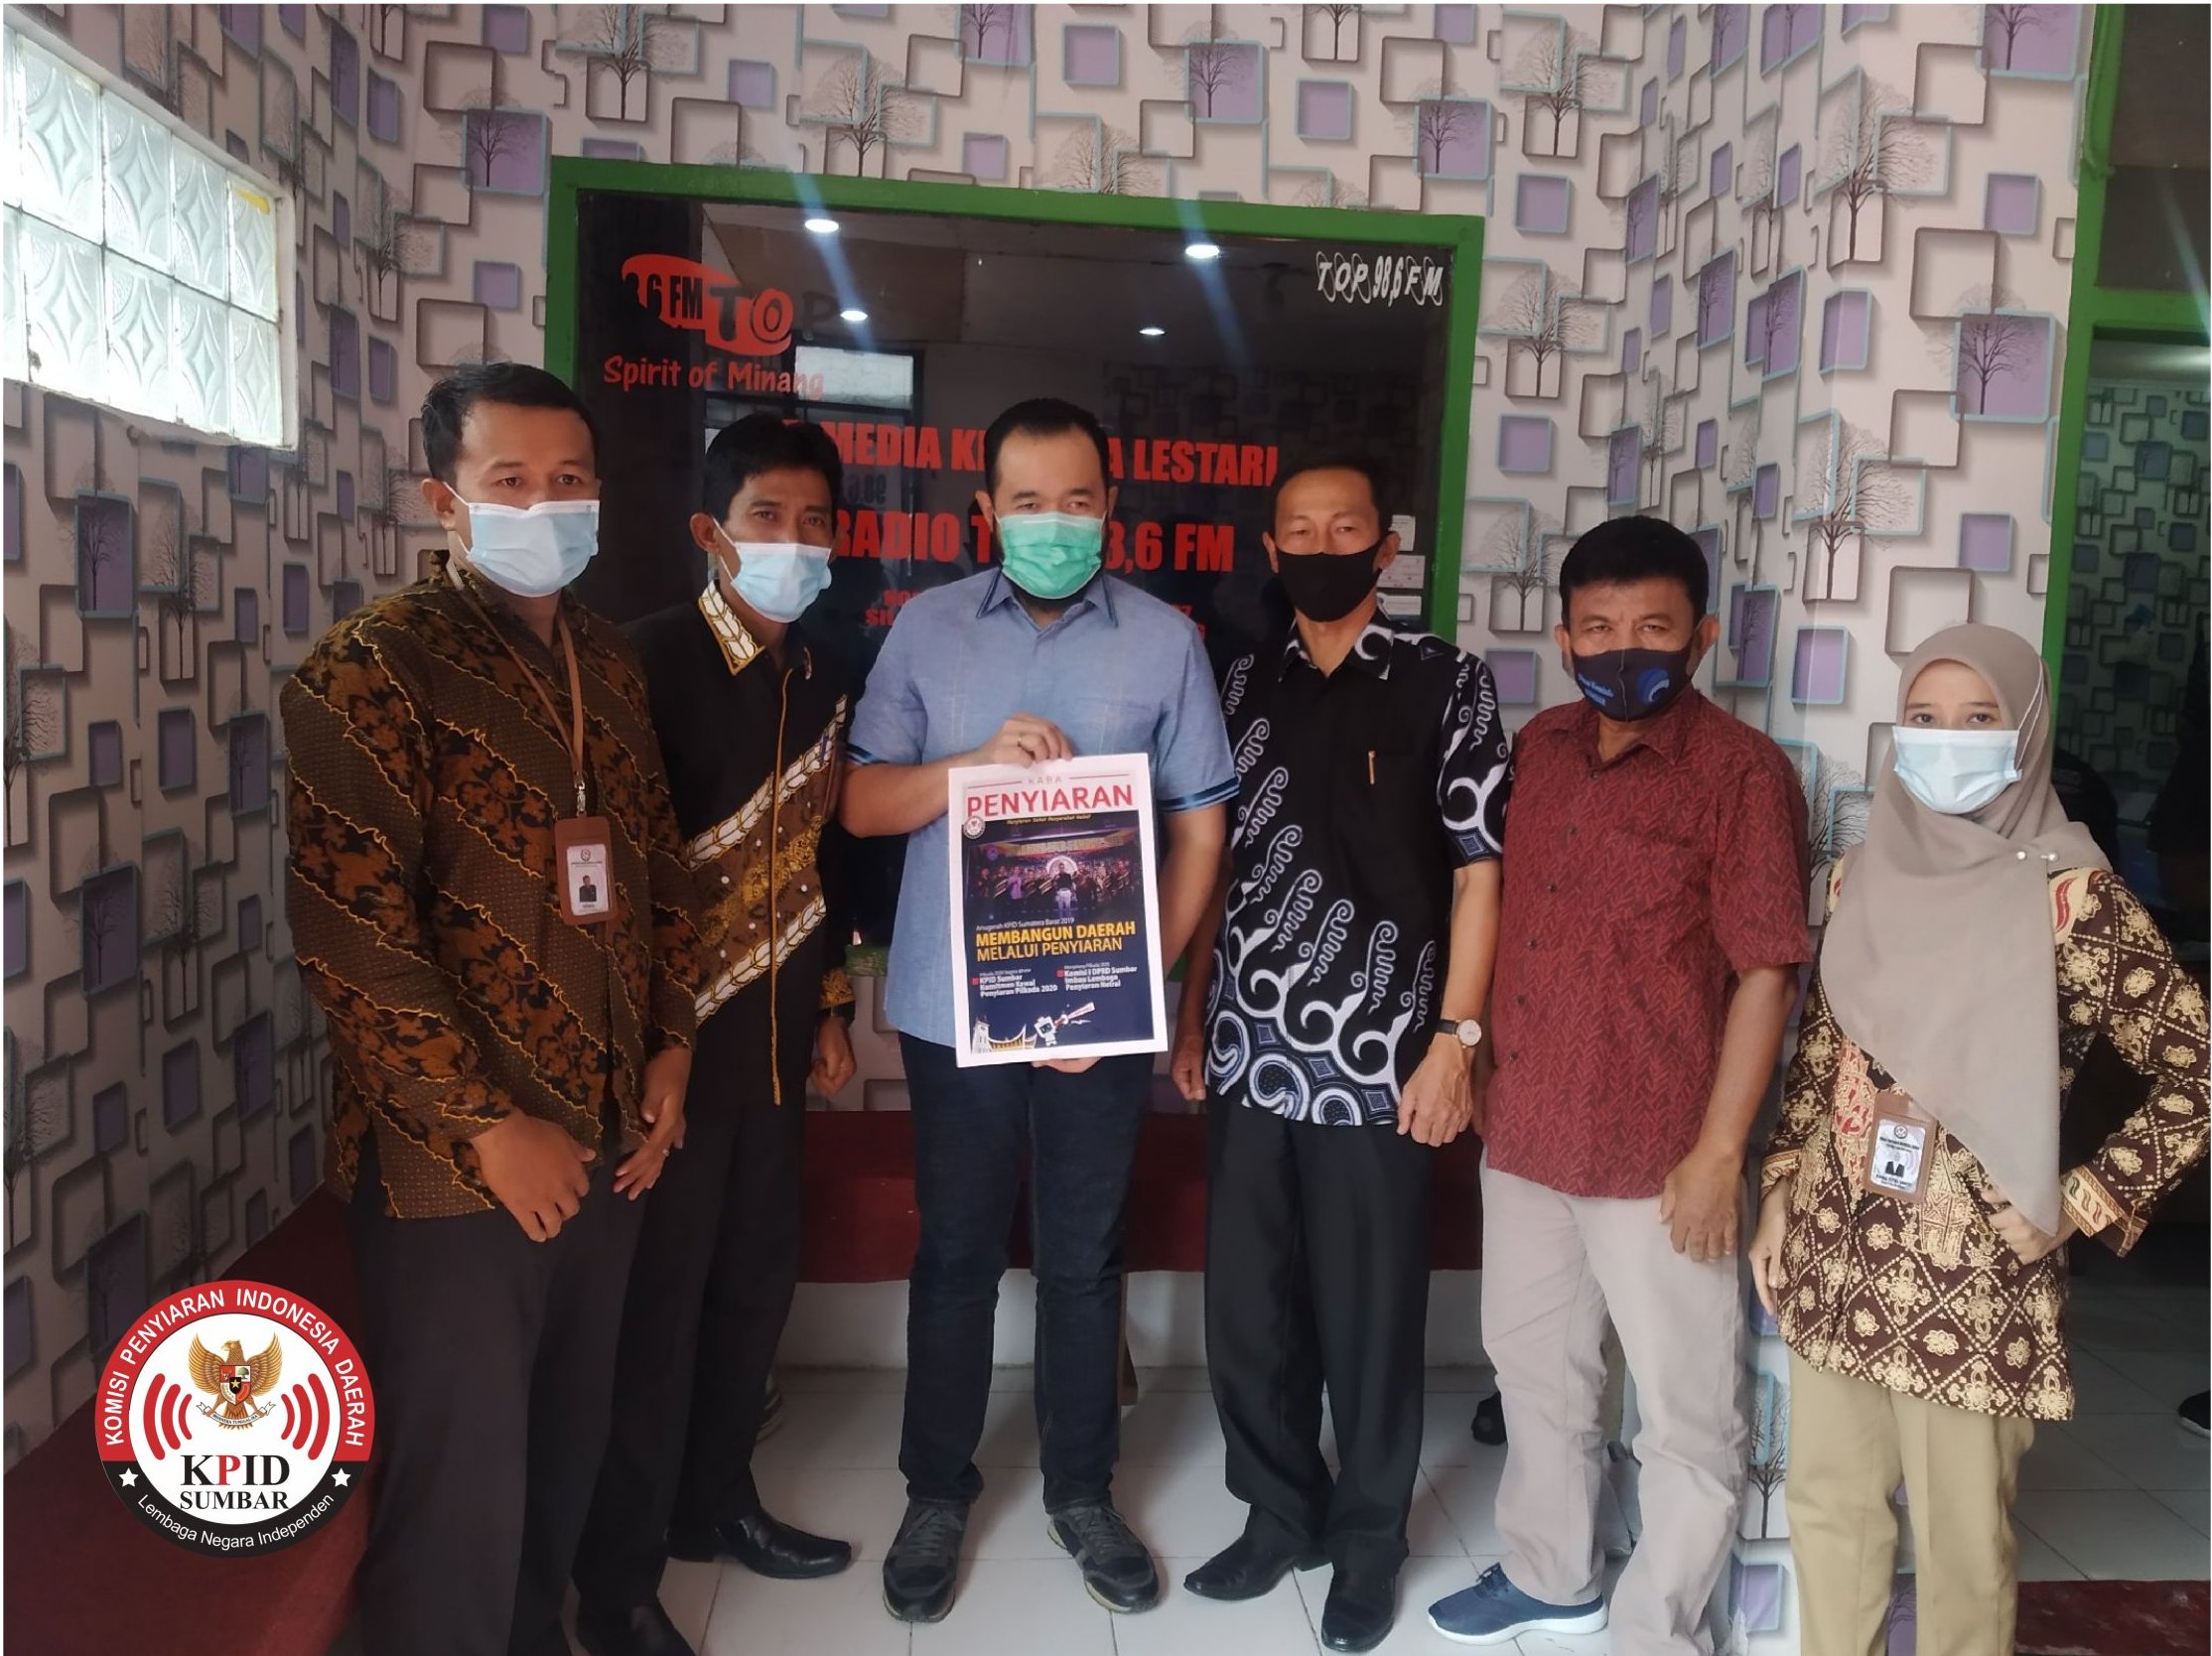 Talkshow Edukasi Covid-19 : Perkembangan Pandemi Covid-19 Setelah Pemberlakuan New Normal Di Kota Padang Panjang